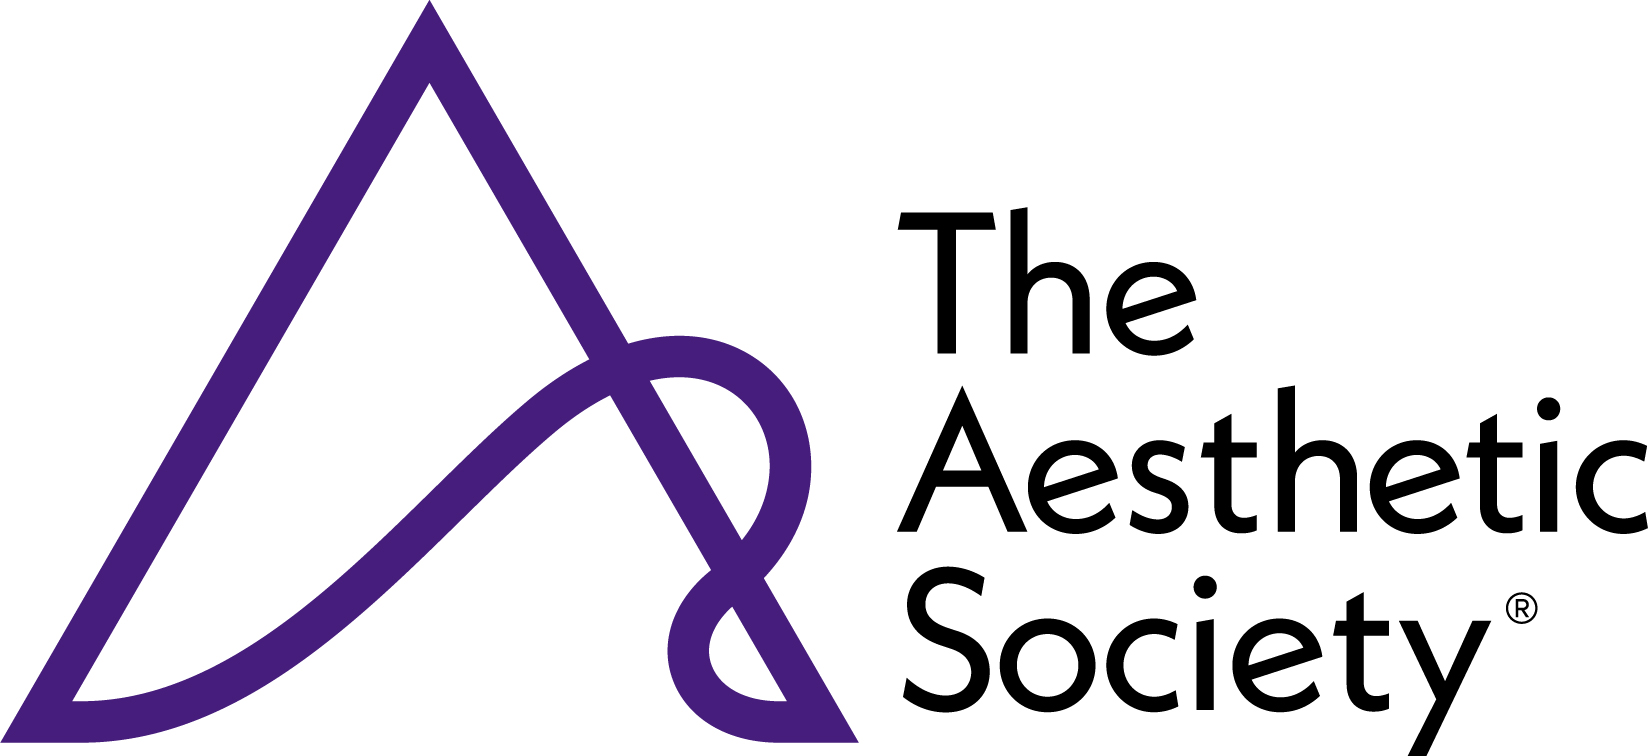 The Aesthetic Society logo